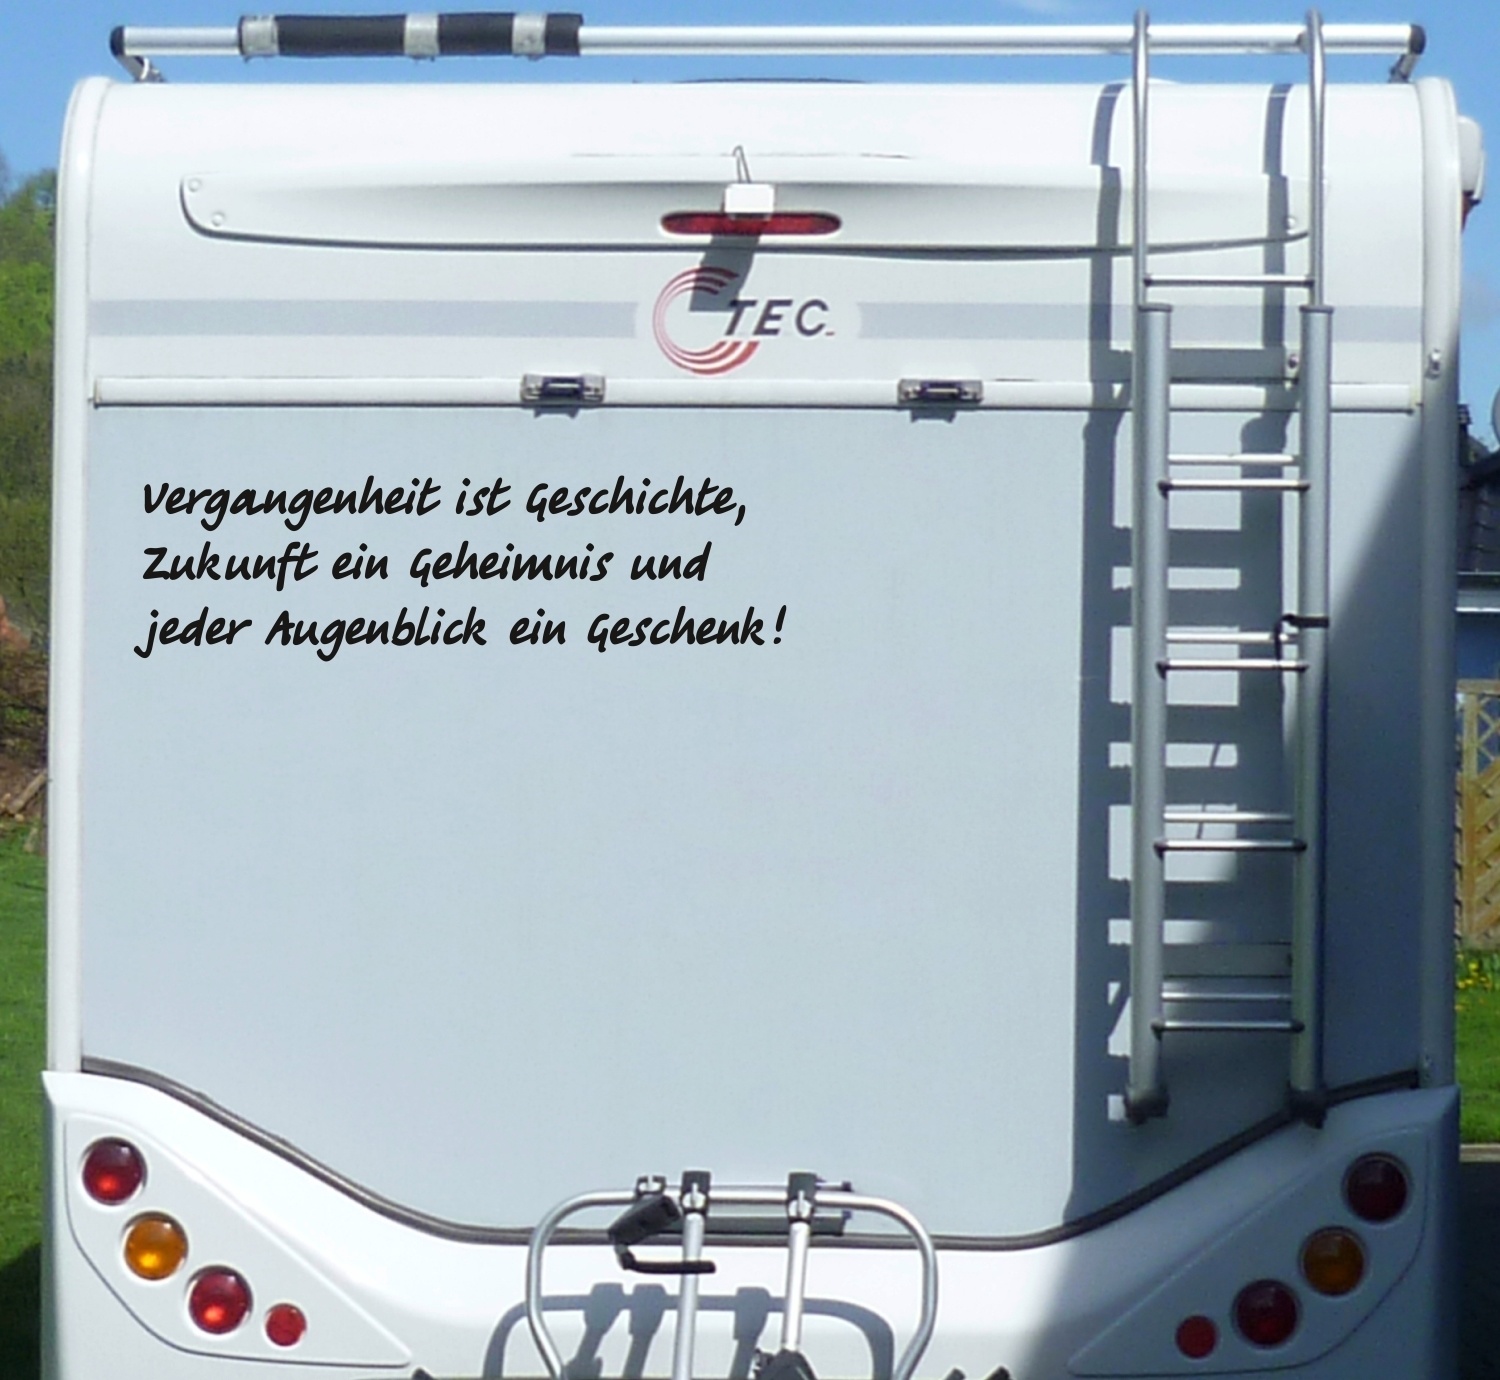 https://schildereinkauf.de/media/image/product/21923/lg/aufkleber-vergangenheit-ist-geschichte-wohnmobil-wohnwagen-camping-caravan-auto.jpg